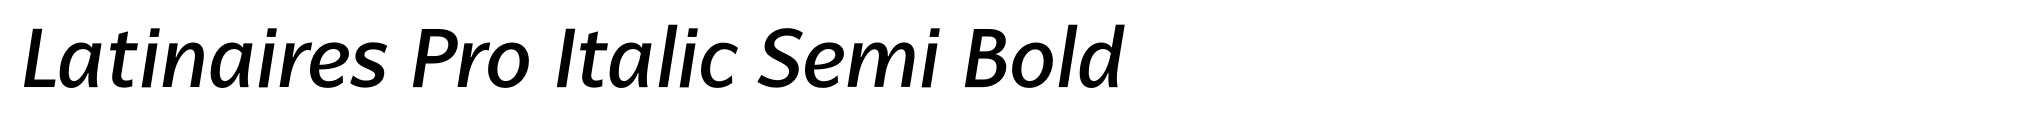 Latinaires Pro Italic Semi Bold image